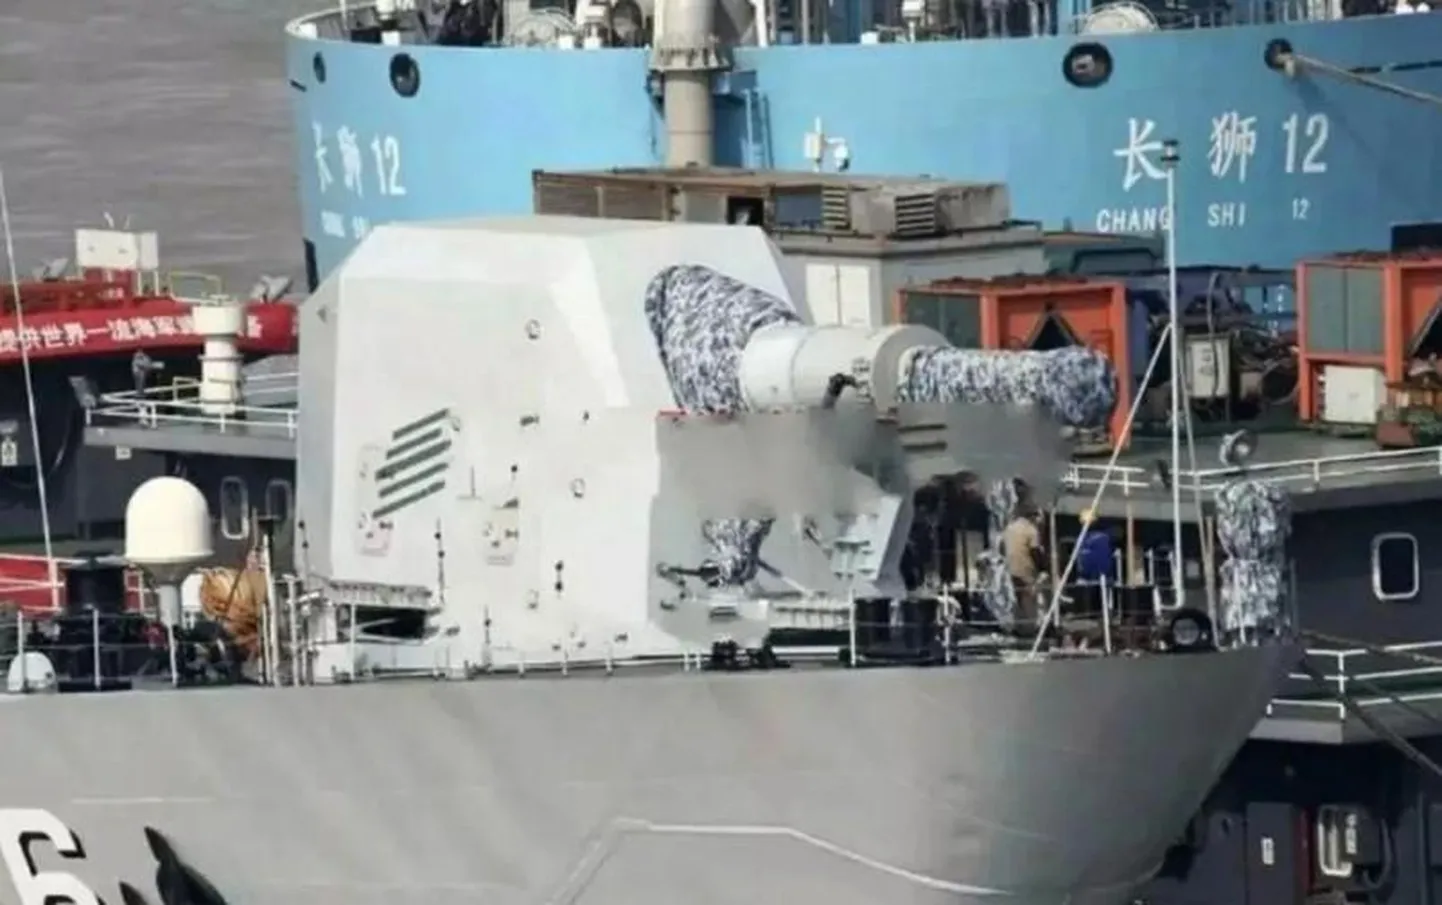 Rööbaskahurit nähti Hiina Type 072 mereväealusel juba 2018. aastal (pildil). Nüüd selgub, et merevägi pole võimsa magnetrelva arendust unustanud ja katsetab seda edasi.